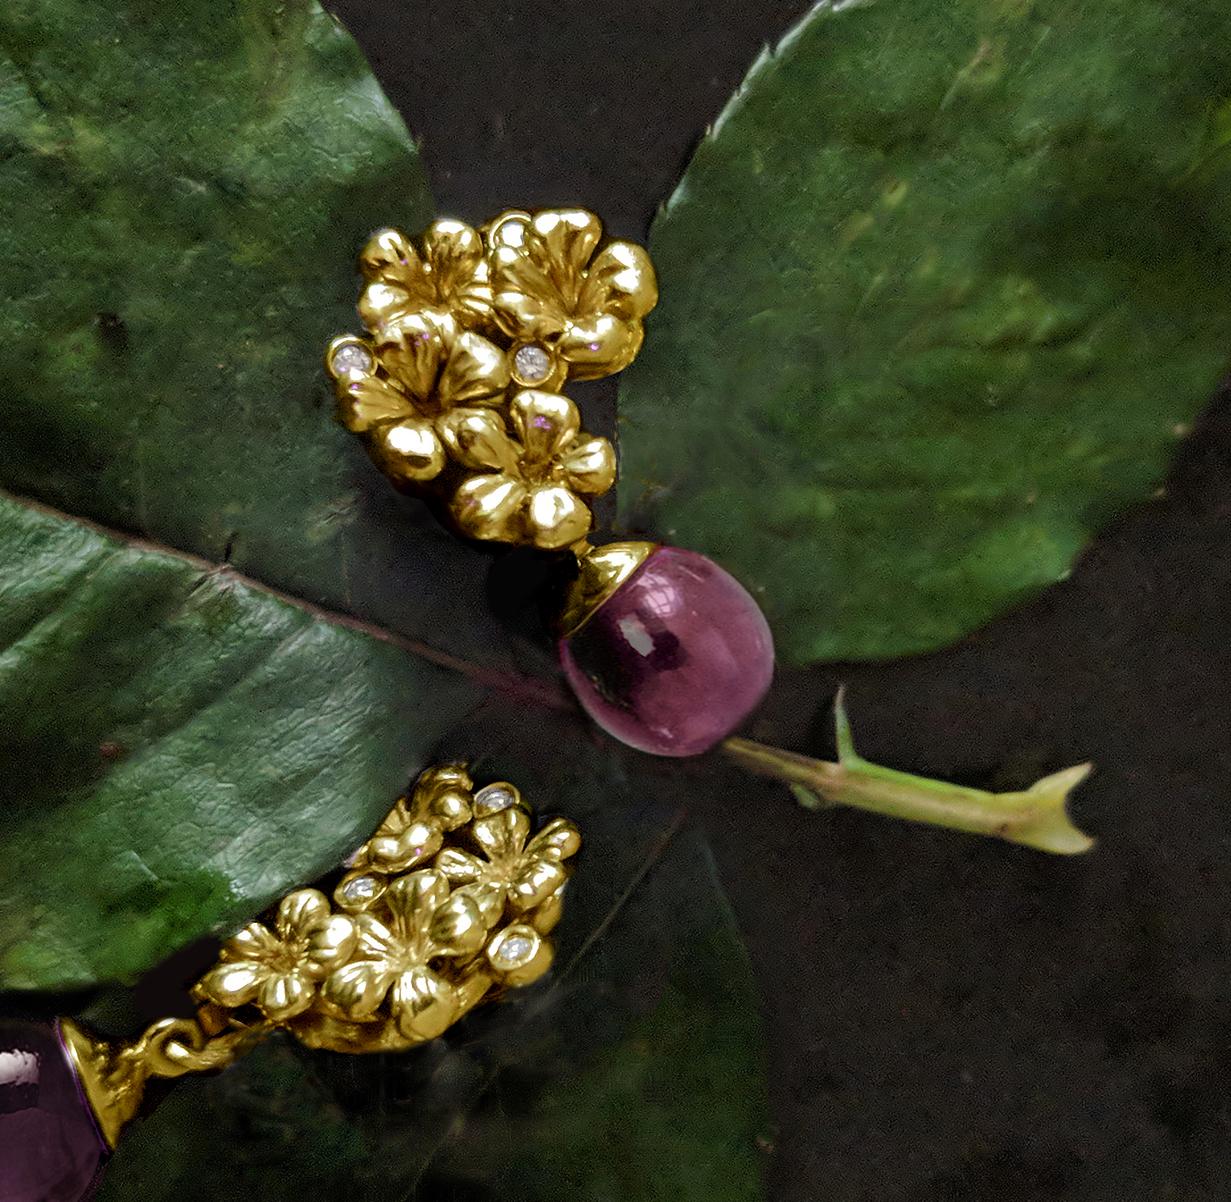 Die Brosche Plum Blossom aus 18 Karat Gelbgold mit einem abnehmbaren Rosenquarz-Tropfen, besetzt mit 3 runden Diamanten, ist ein zeitgenössisches Schmuckstück, das in der Vogue UA besprochen wurde. Der Cabochon-Zitronenquarz kann leicht durch andere